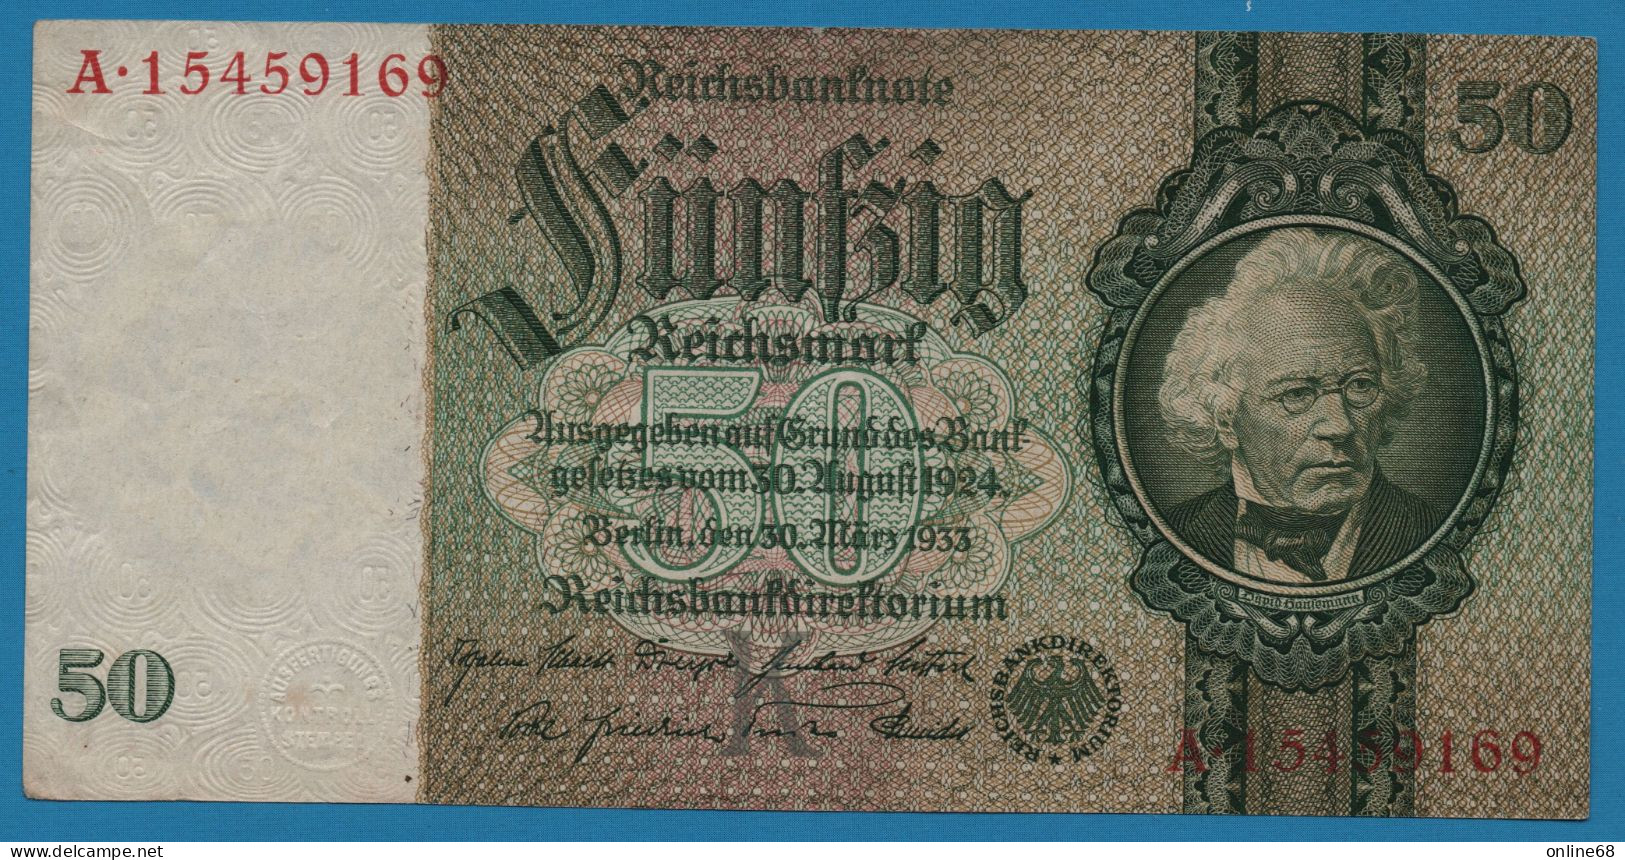 DEUTSCHES REICH 50 REICHSMARK 30.03.1933 LETTER K # A.15459169 P# 182a David Hansemann - 50 Reichsmark